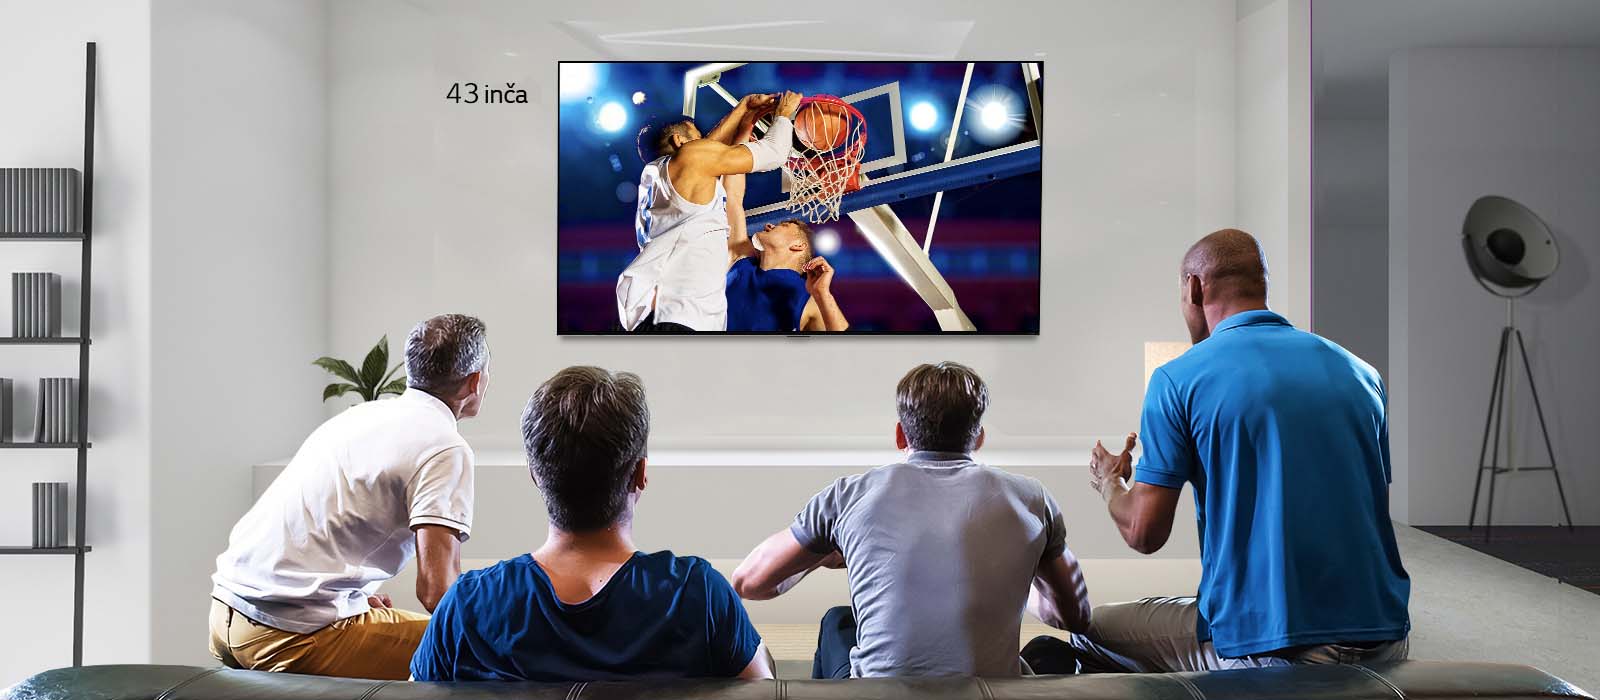 Prikaz sa zadnje strane televizora montiranog na zid, na kome je prikazana košarkaška utakmica koju gledaju četiri muškarca. Listanje sleva nadesno prikazuje razliku u veličini između 43-inčnog i 86-inčnog ekrana.